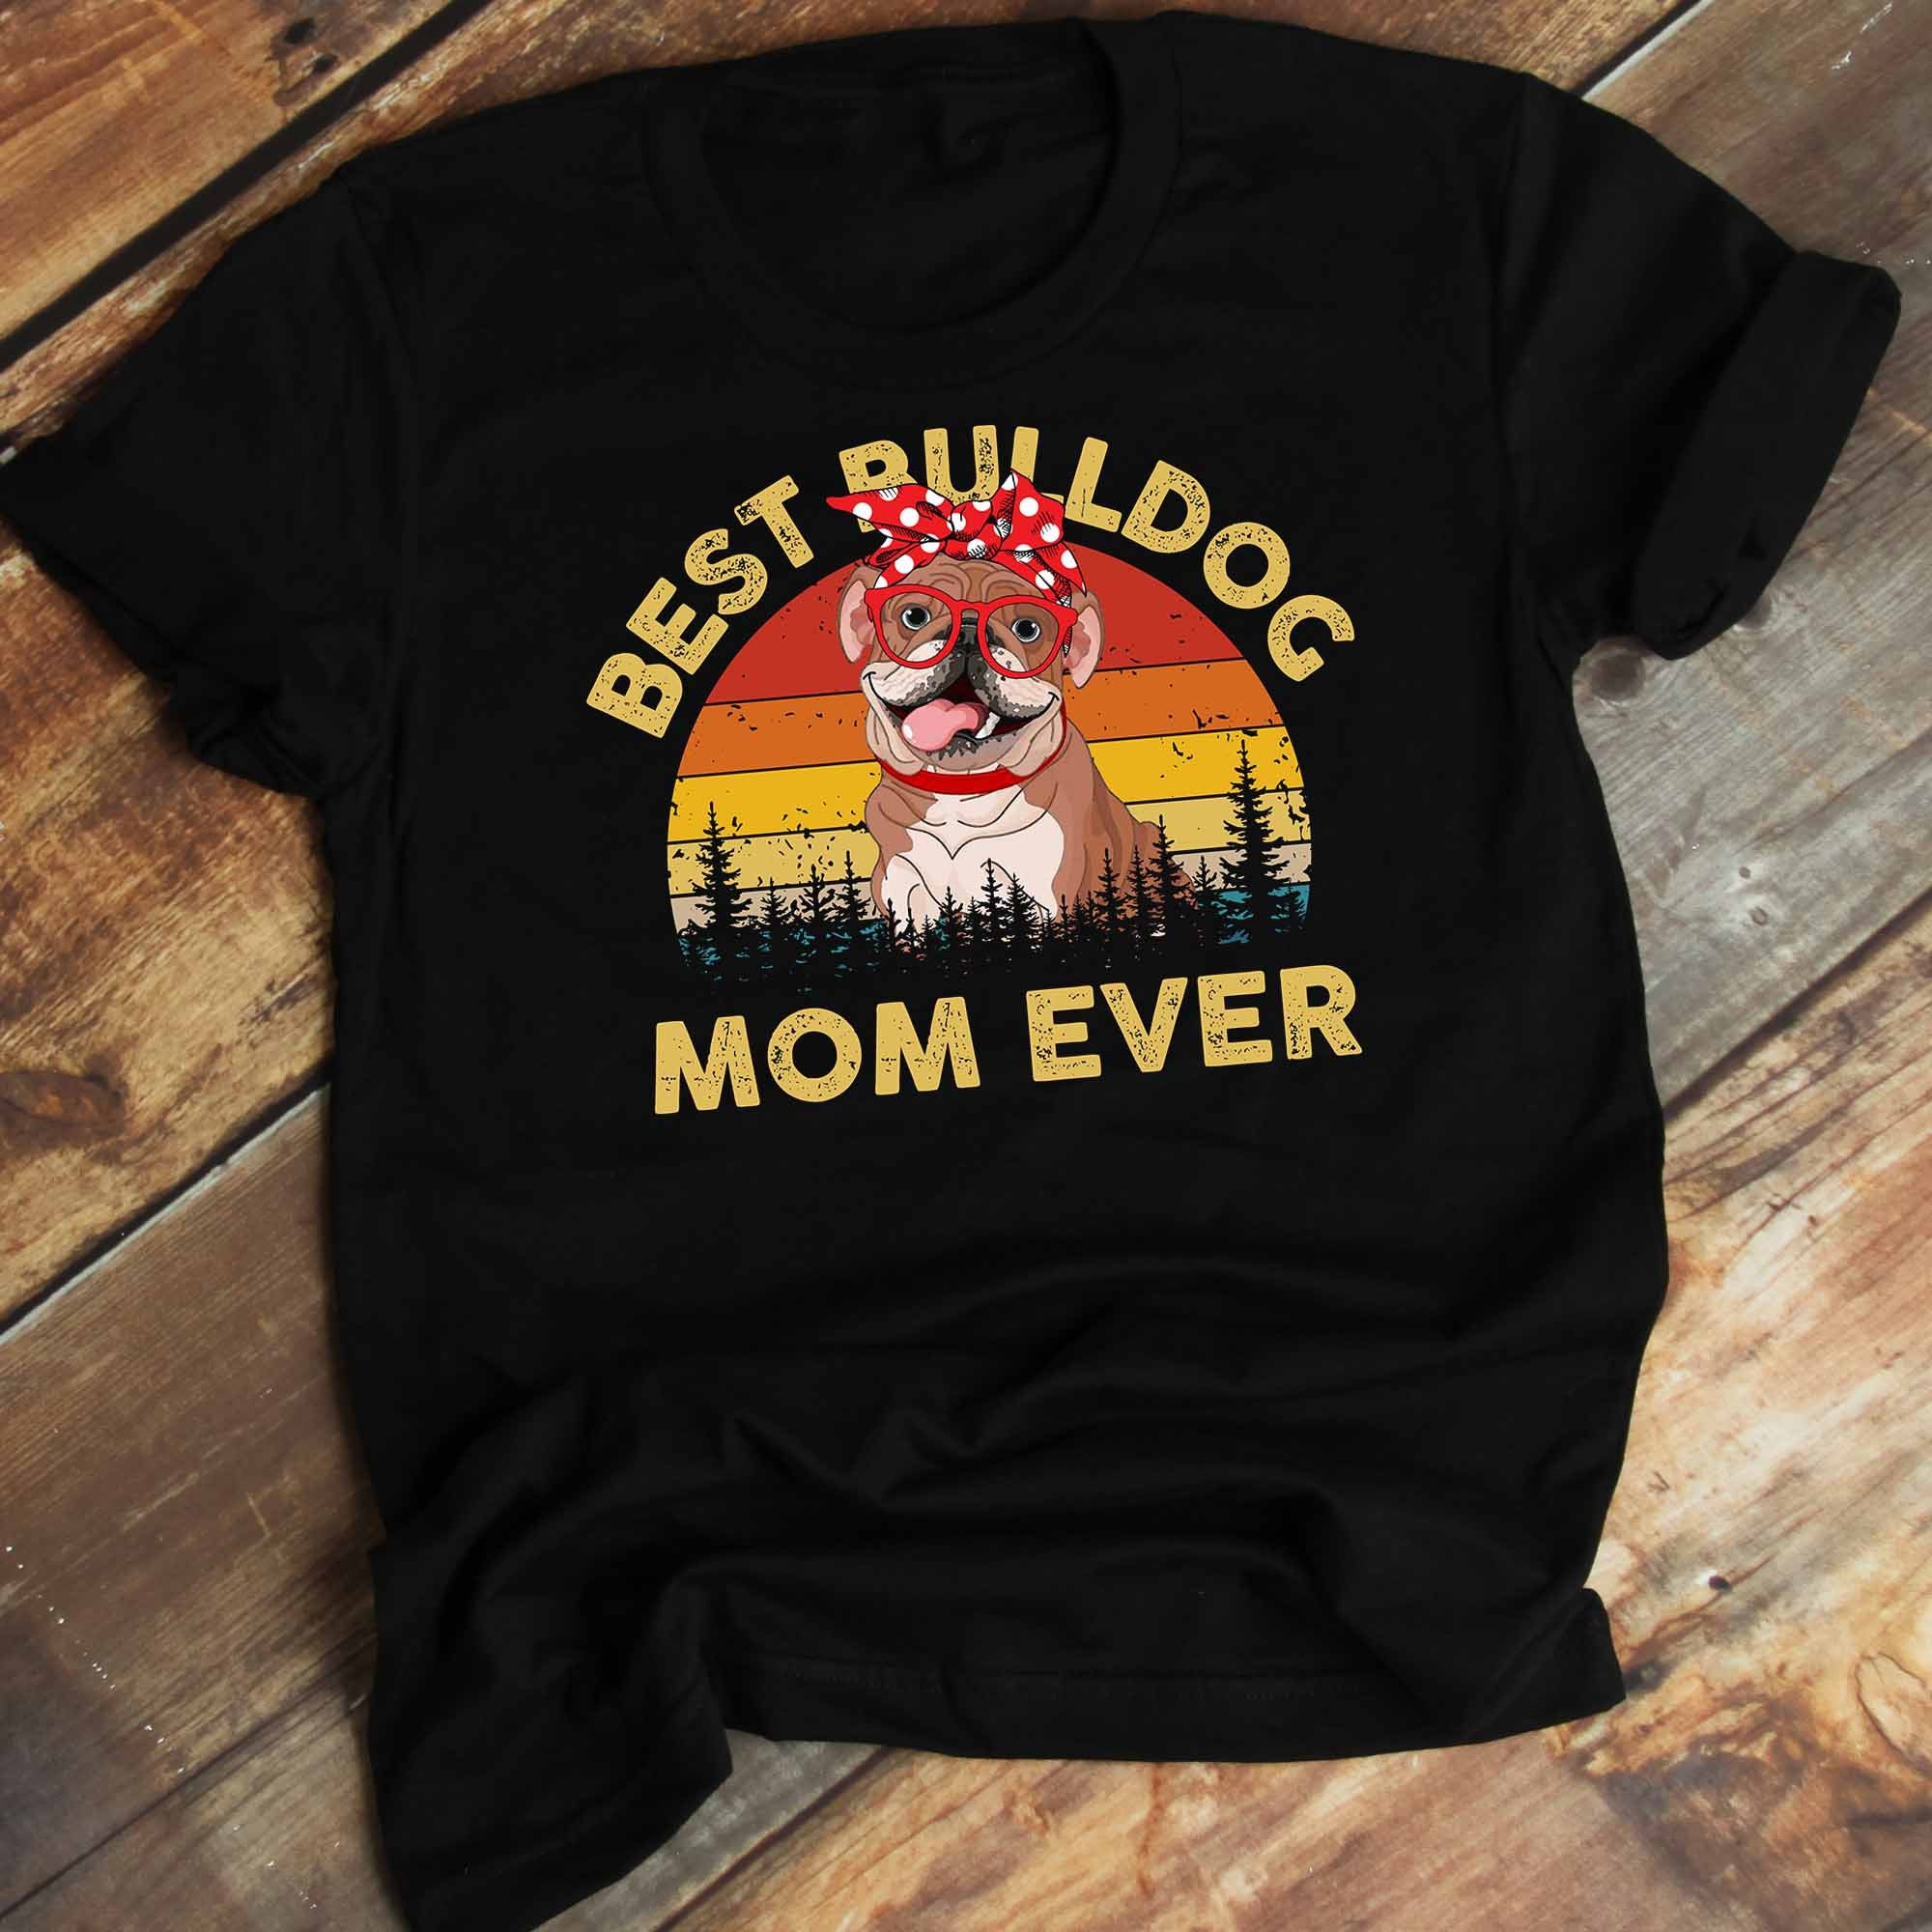 Best Bulldog Mom Ever T-Shirt Bulldog Shirt for Mom Bulldog | Etsy